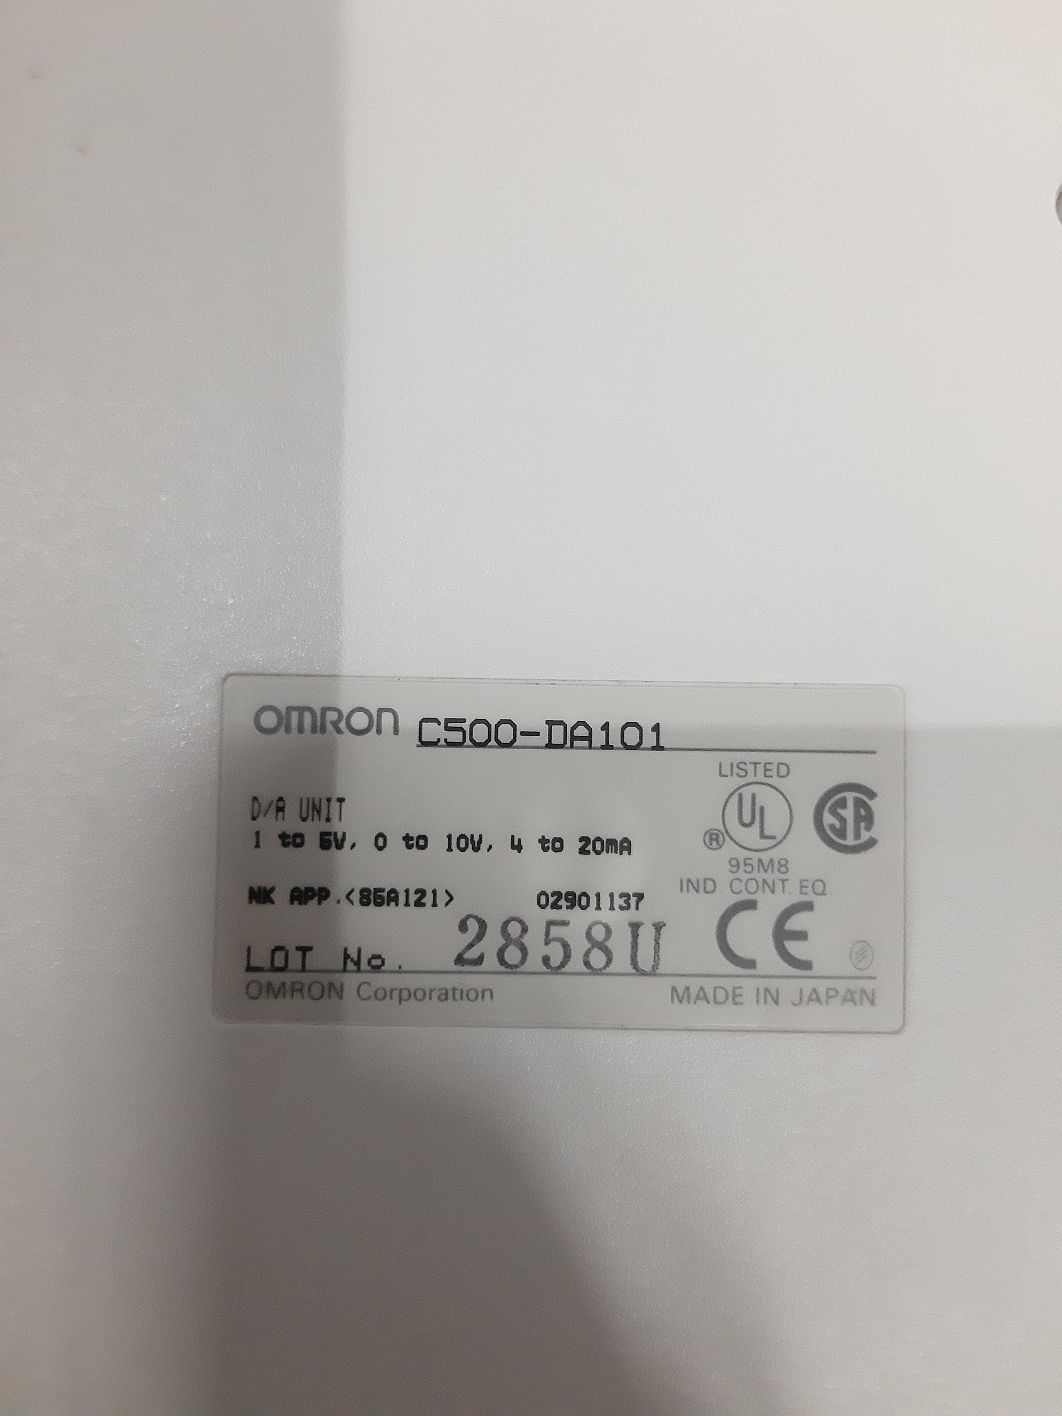 OMRON D/A MODULE UNIT C500-DA101